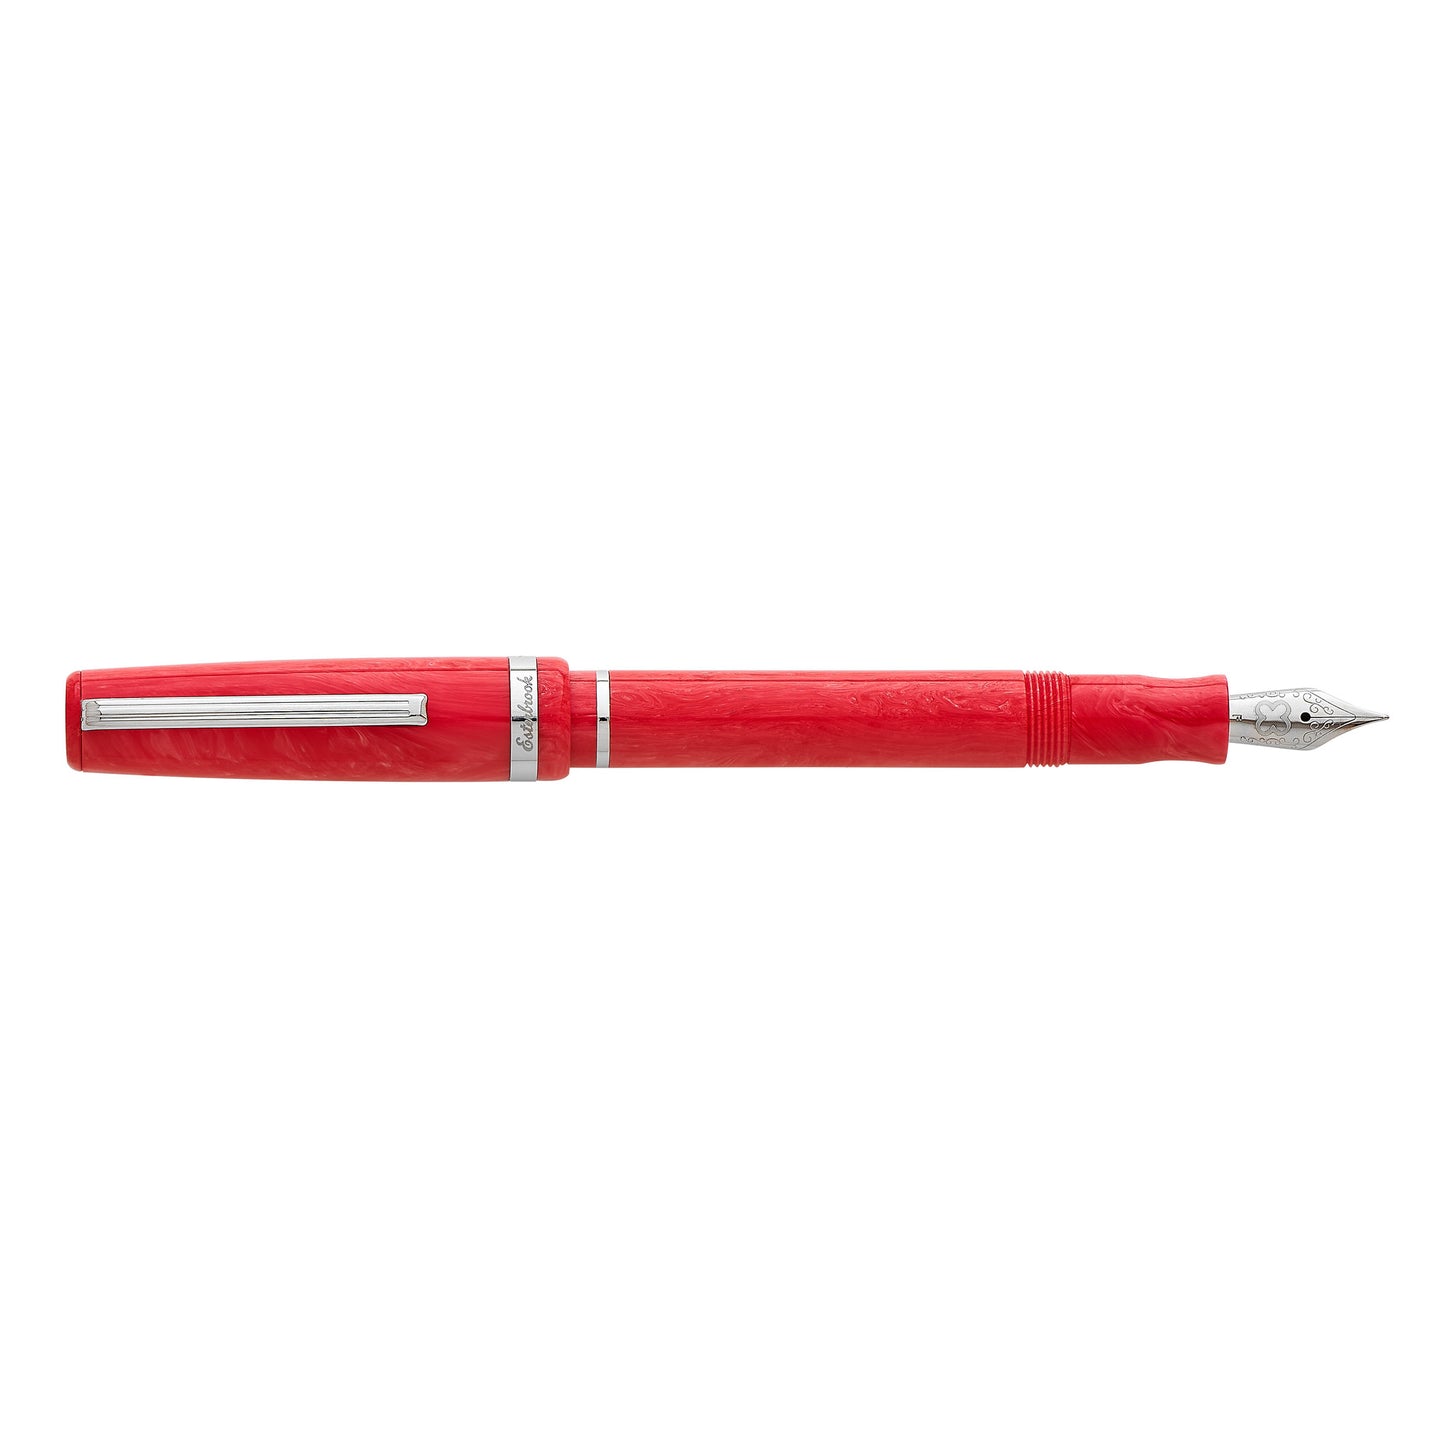 Esterbrook JR Fountain Pen - Carmine Red (Discontinued)